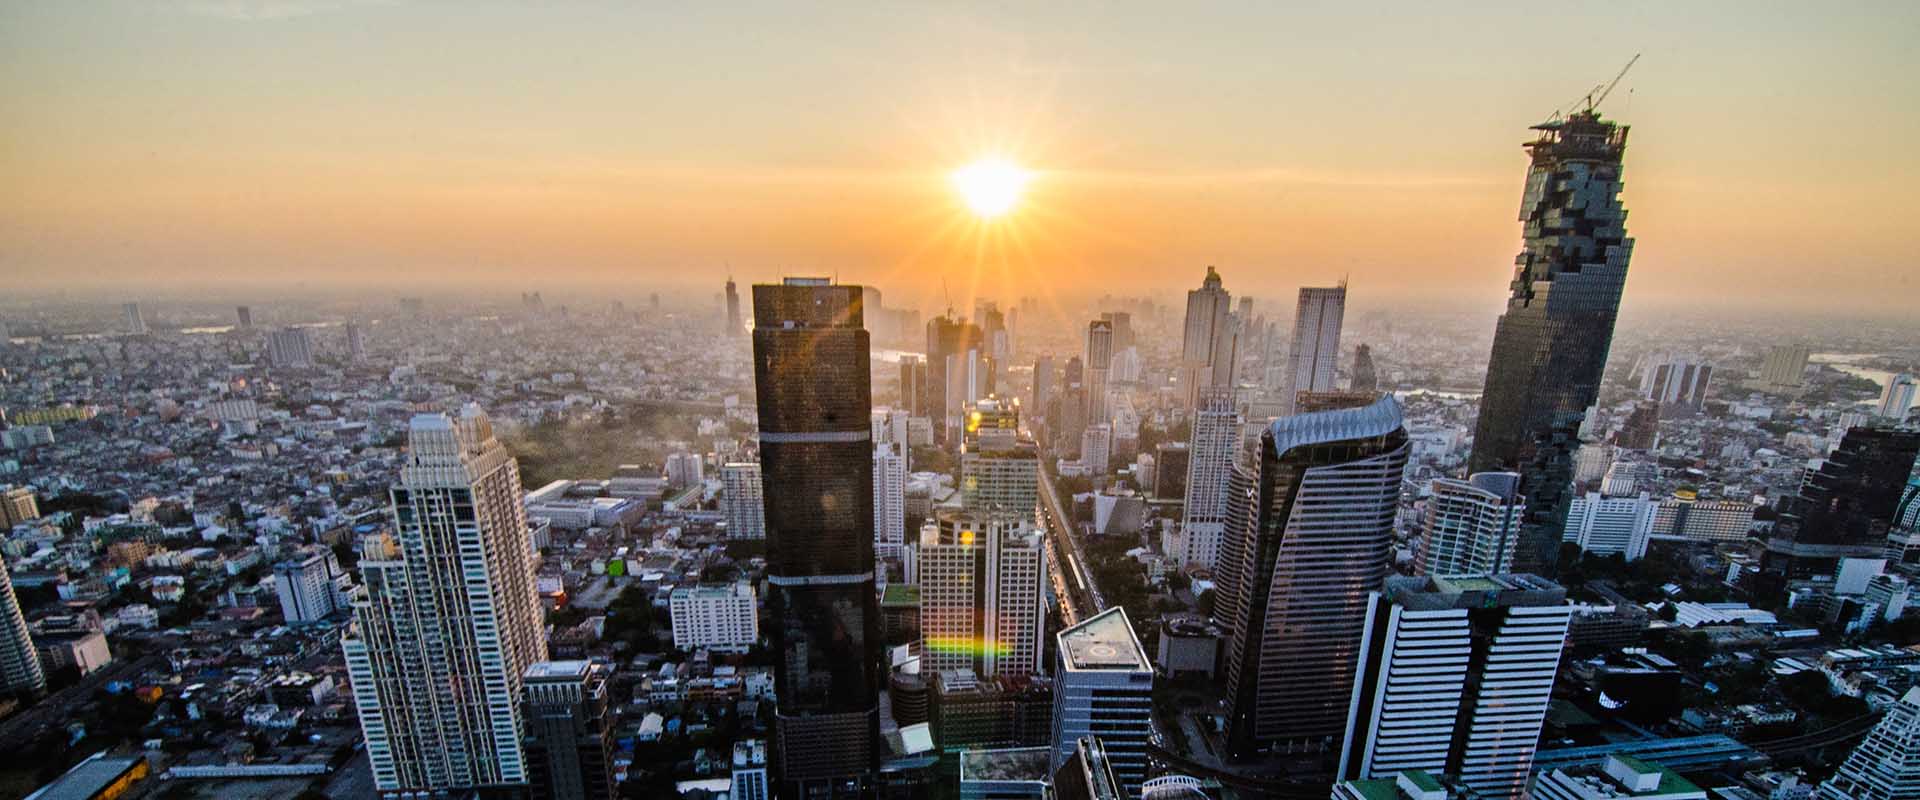 Bangkok-Skyline-At-Dawn.jpg